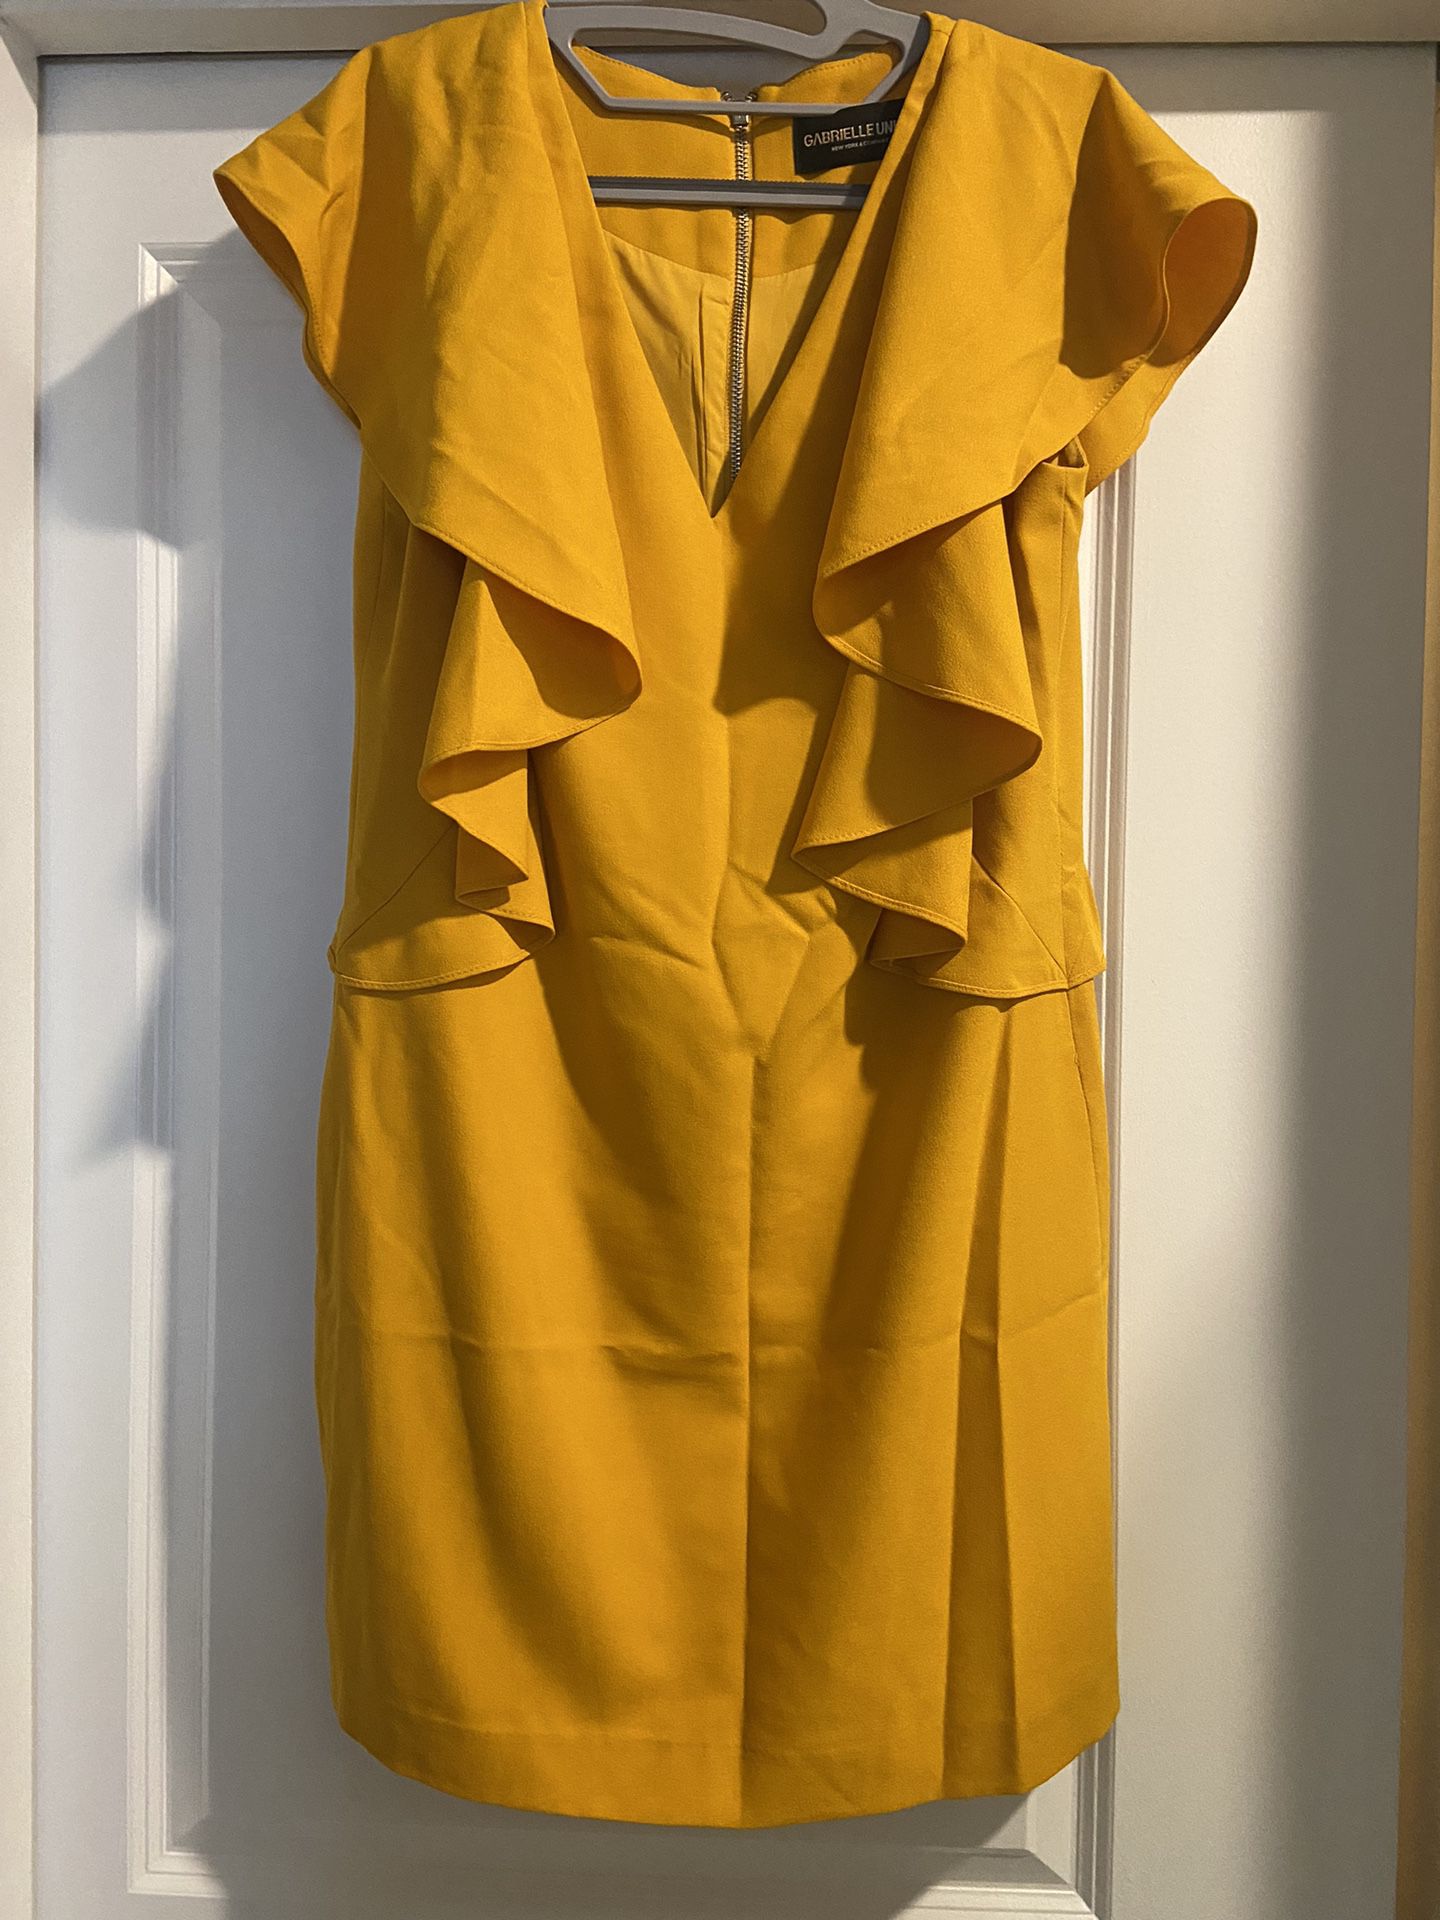 Gold Gabrielle Union Colection Dress